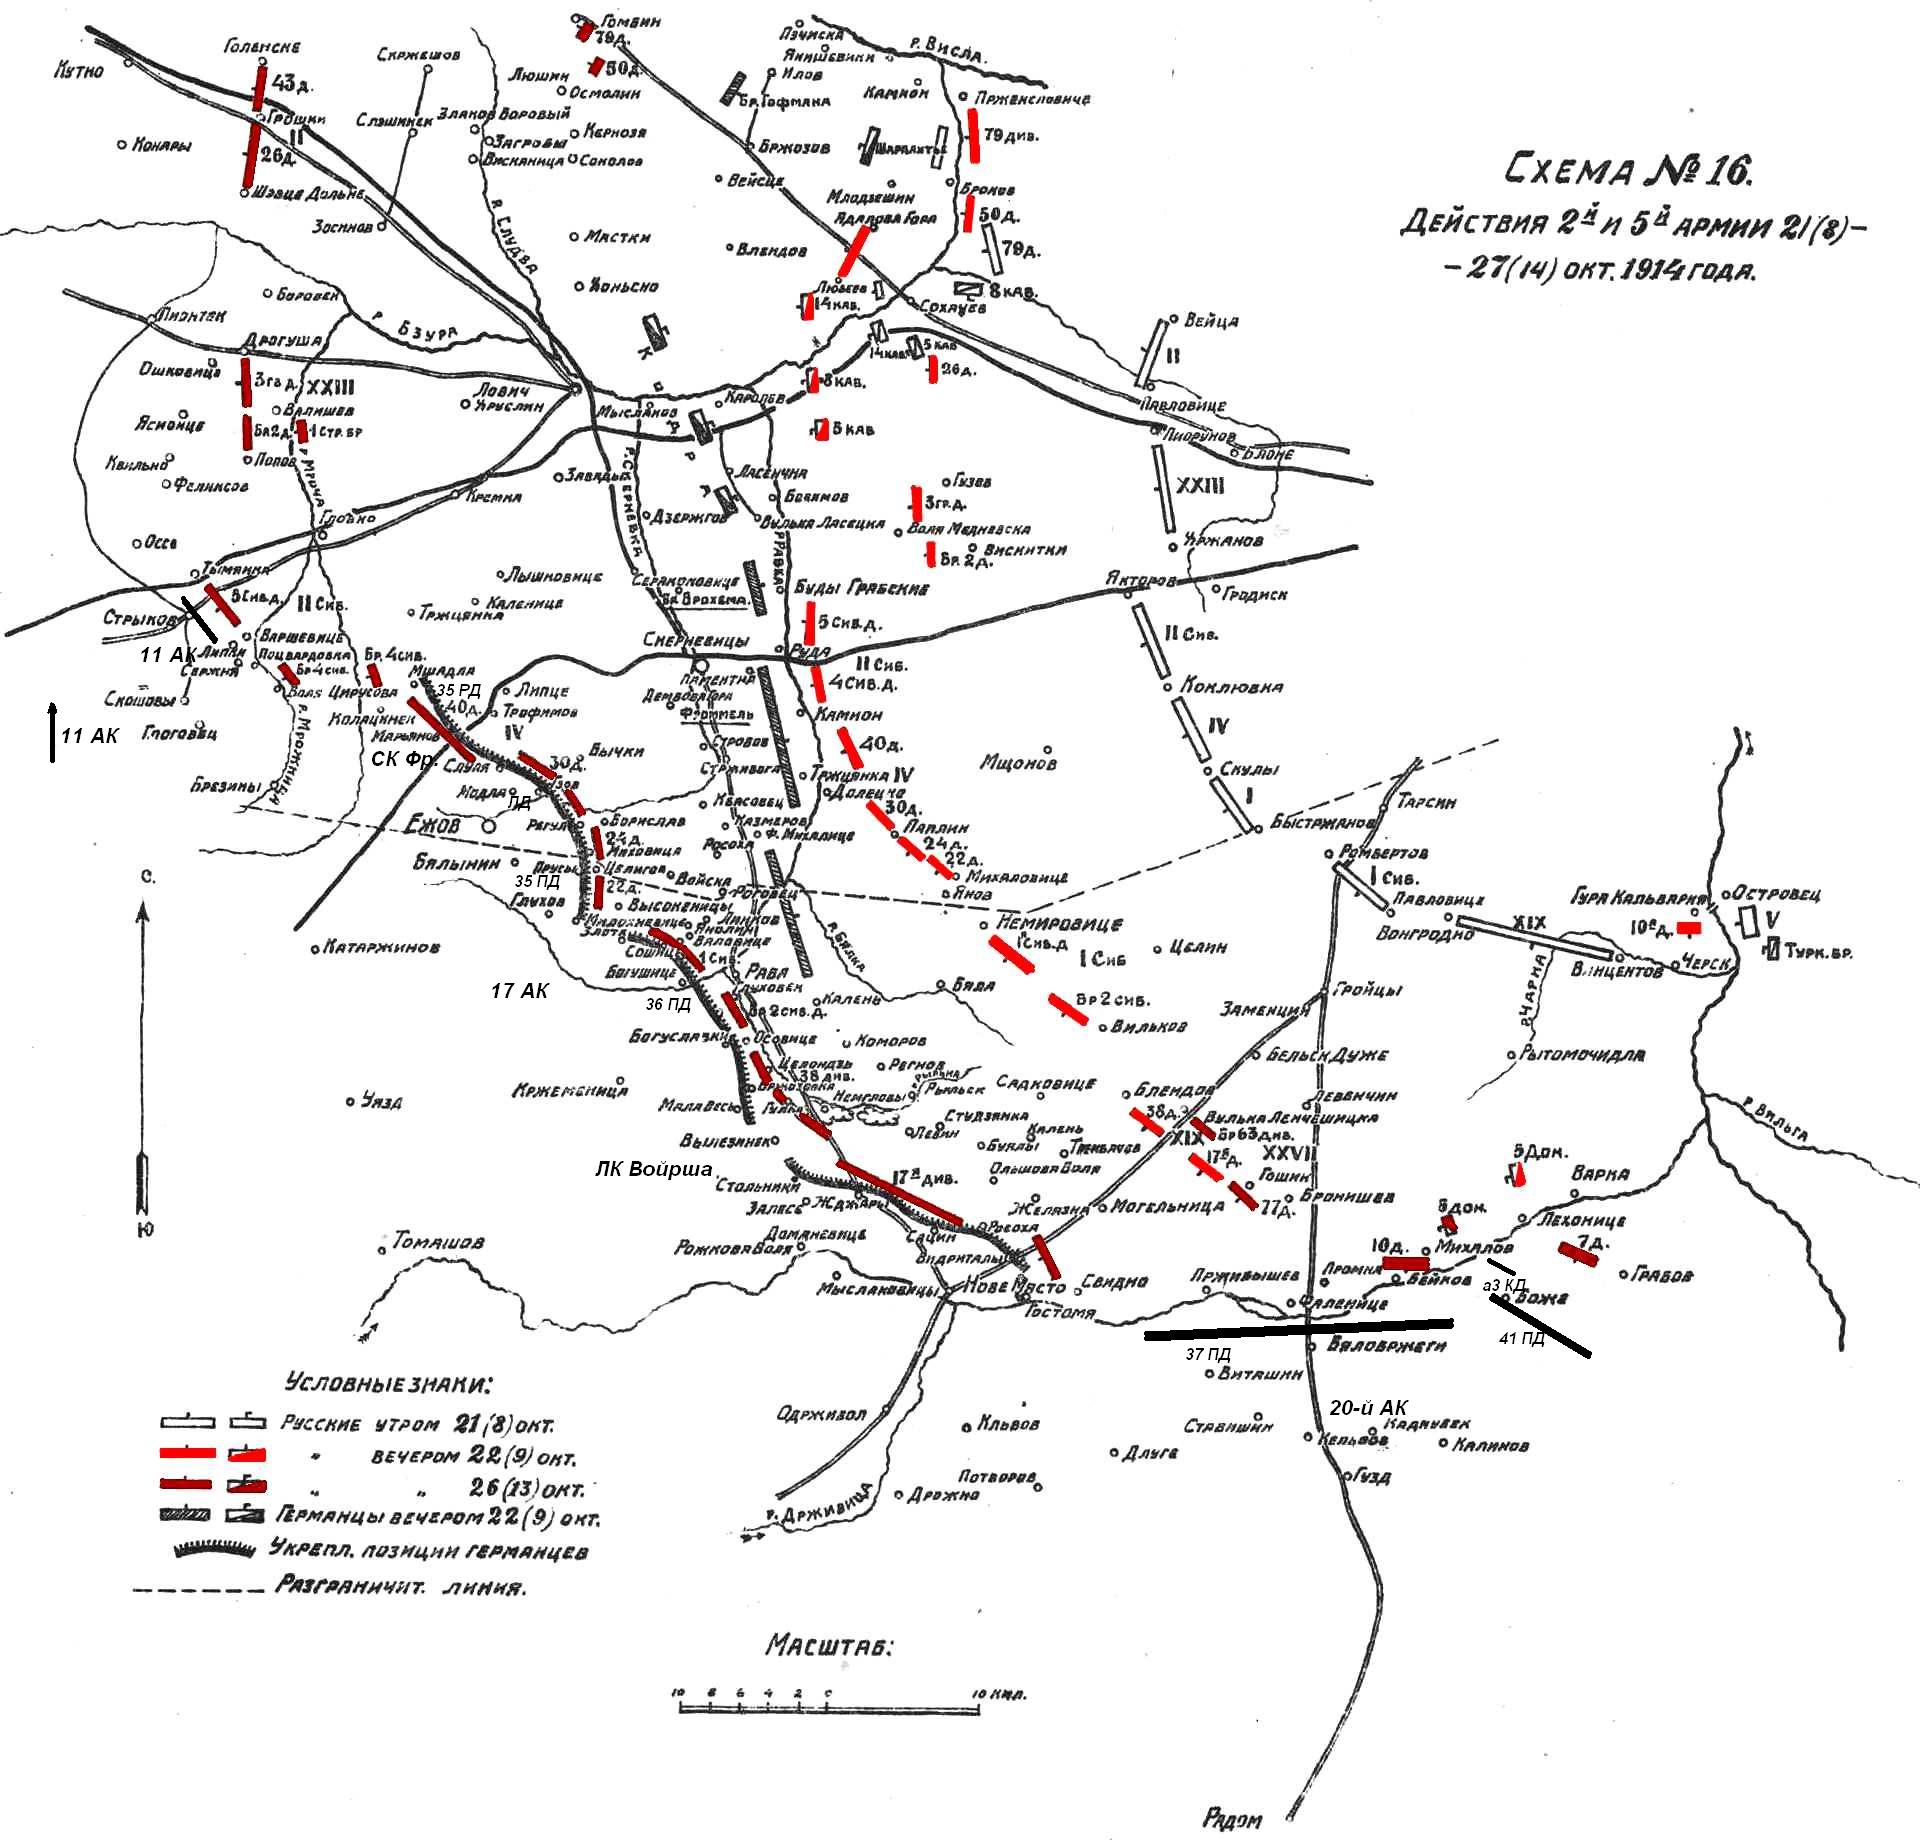 Наступление от Варшавы 21 - 27 октября 1914 и сражения у Ежова и Равы